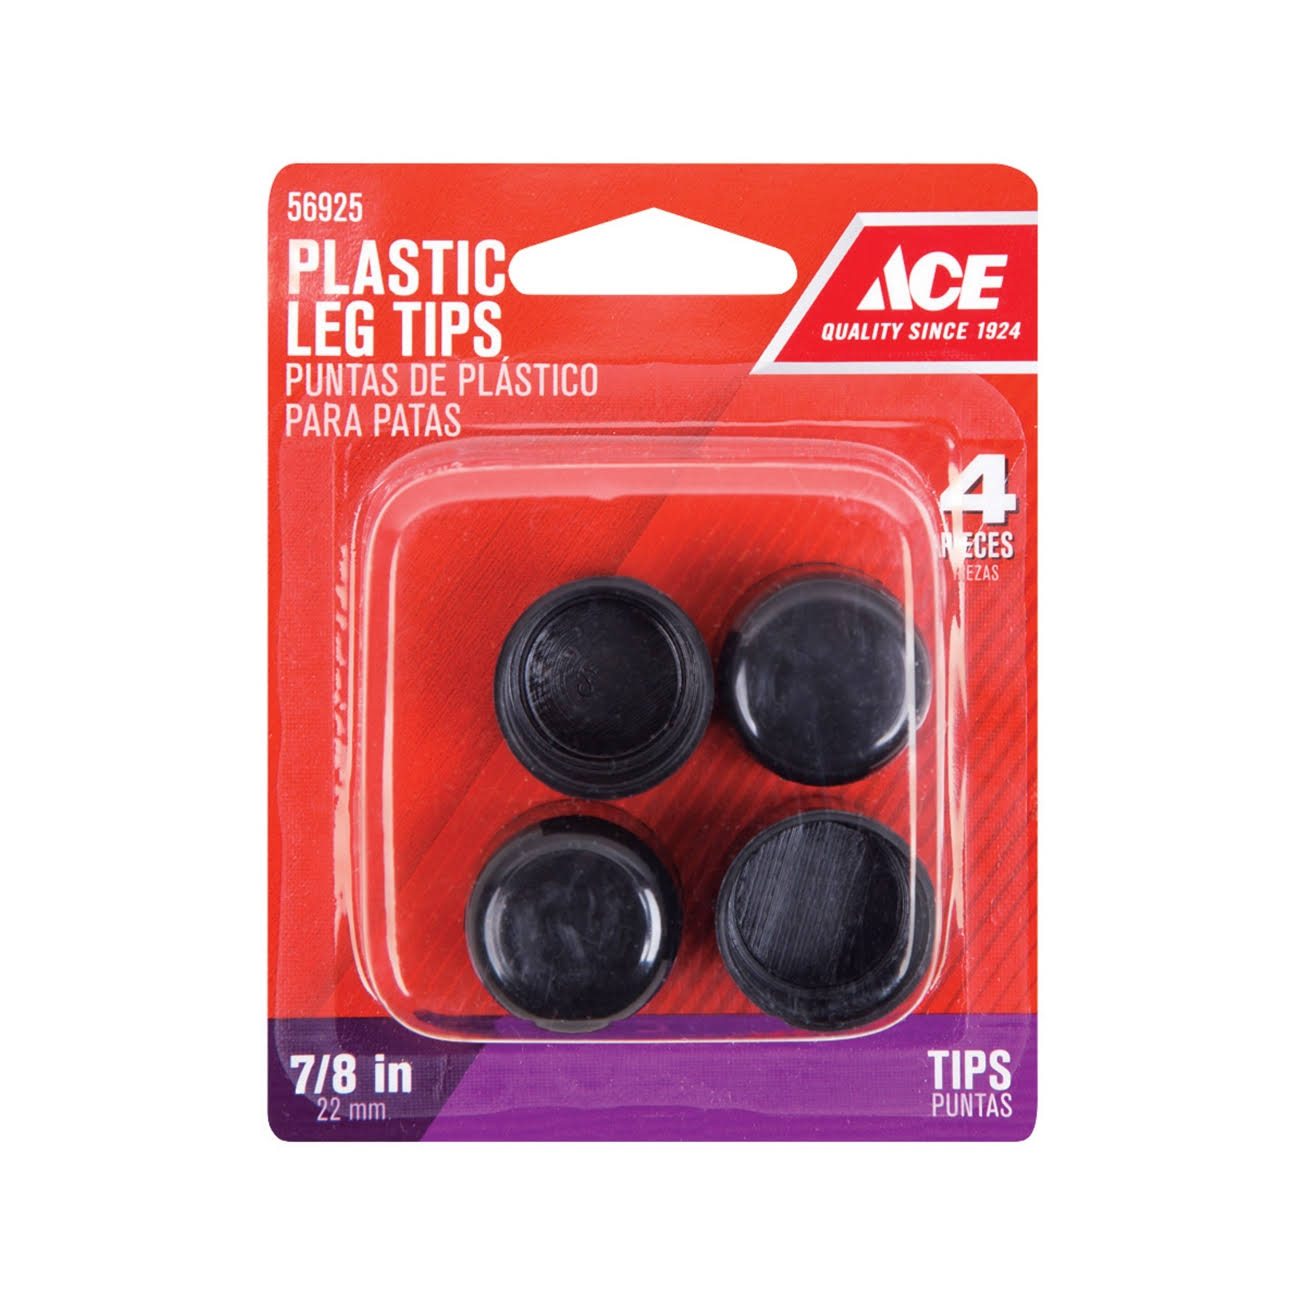 Ace Plastic Leg Tips - Black, 22mm, 4 Pieces